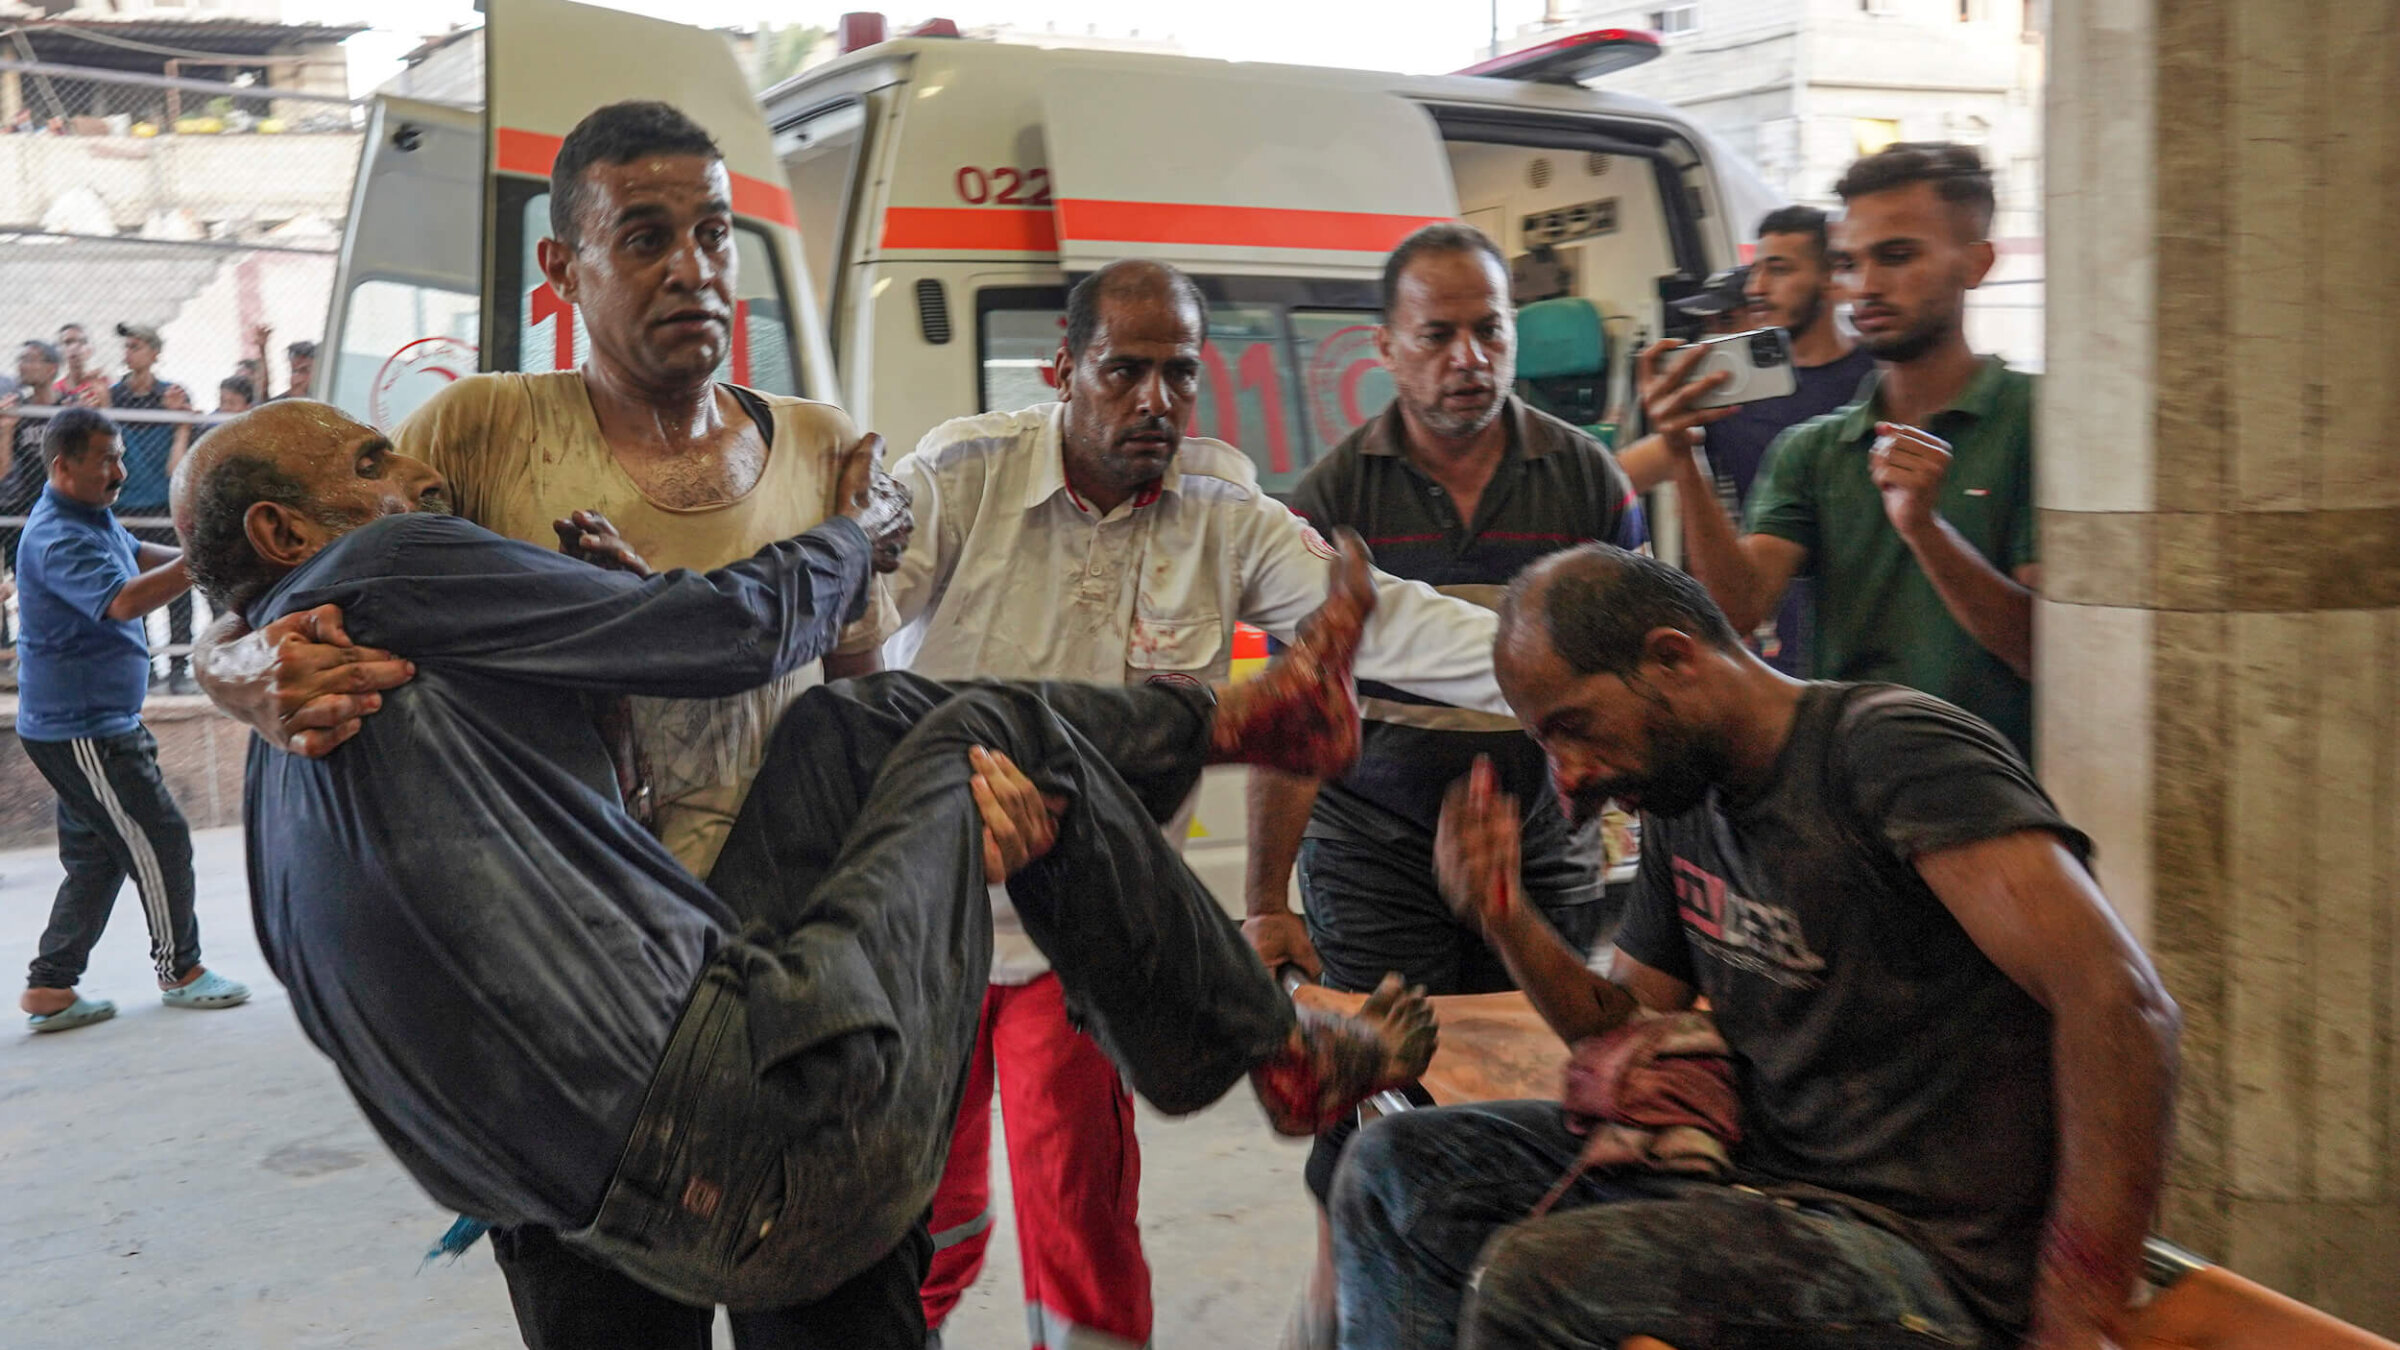 On July 9, people injured in Israeli bombings arrive at Nassr Hospital in Khan Yunis. 